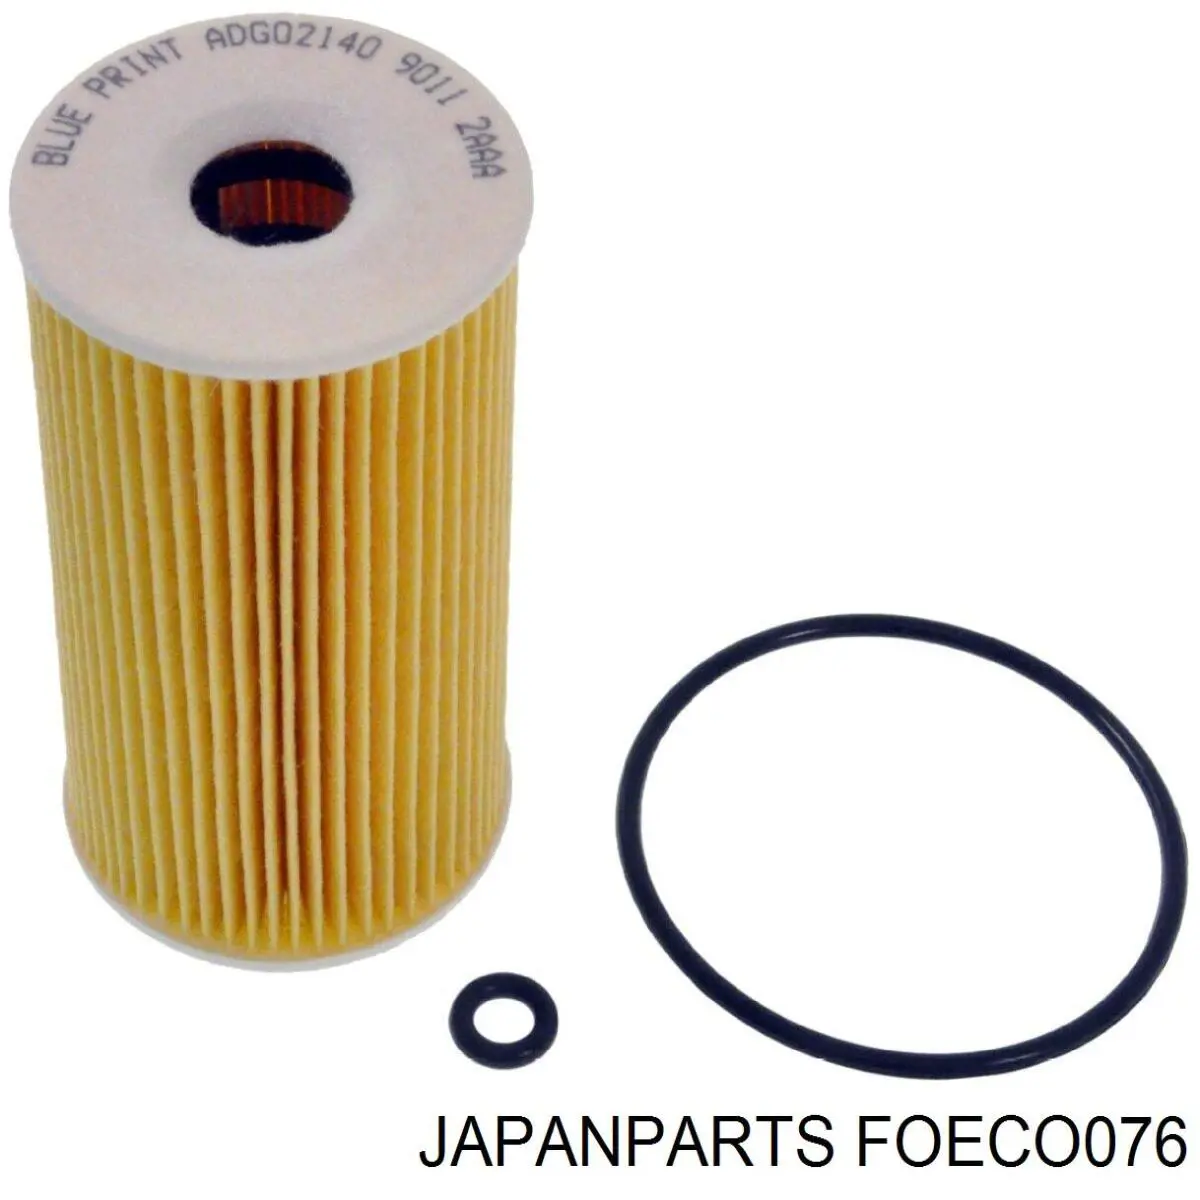 FOECO076 Japan Parts filtro de aceite